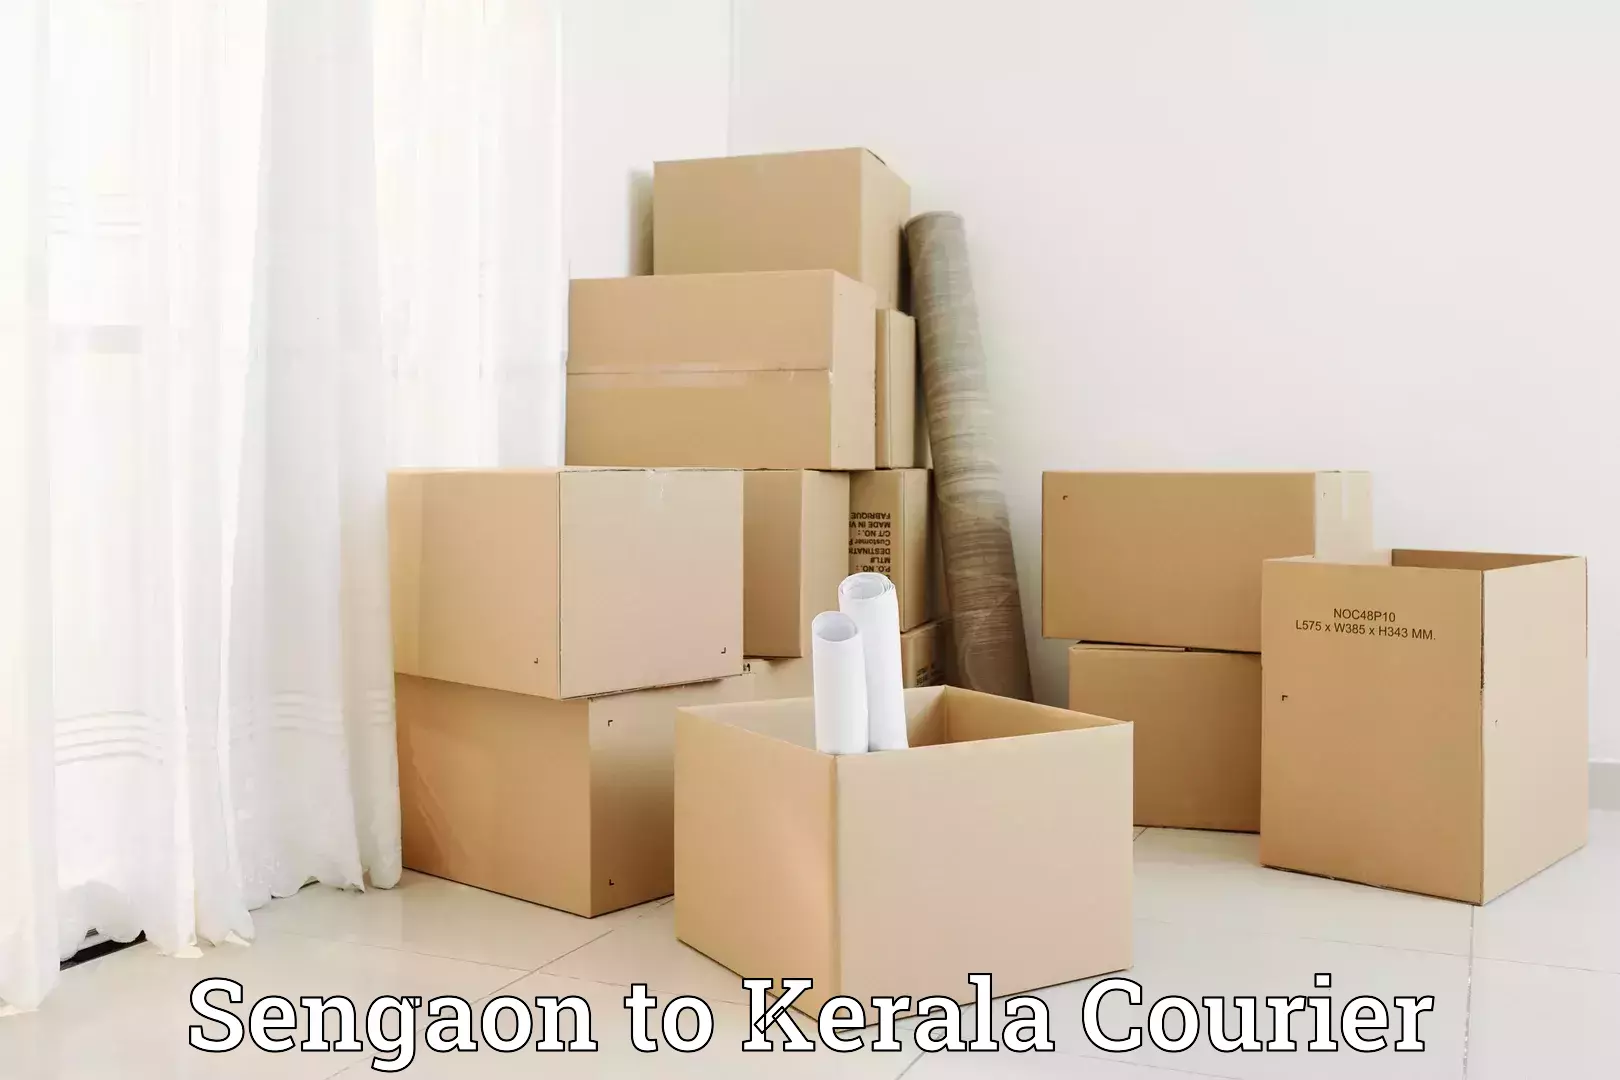 Baggage shipping optimization Sengaon to Kerala